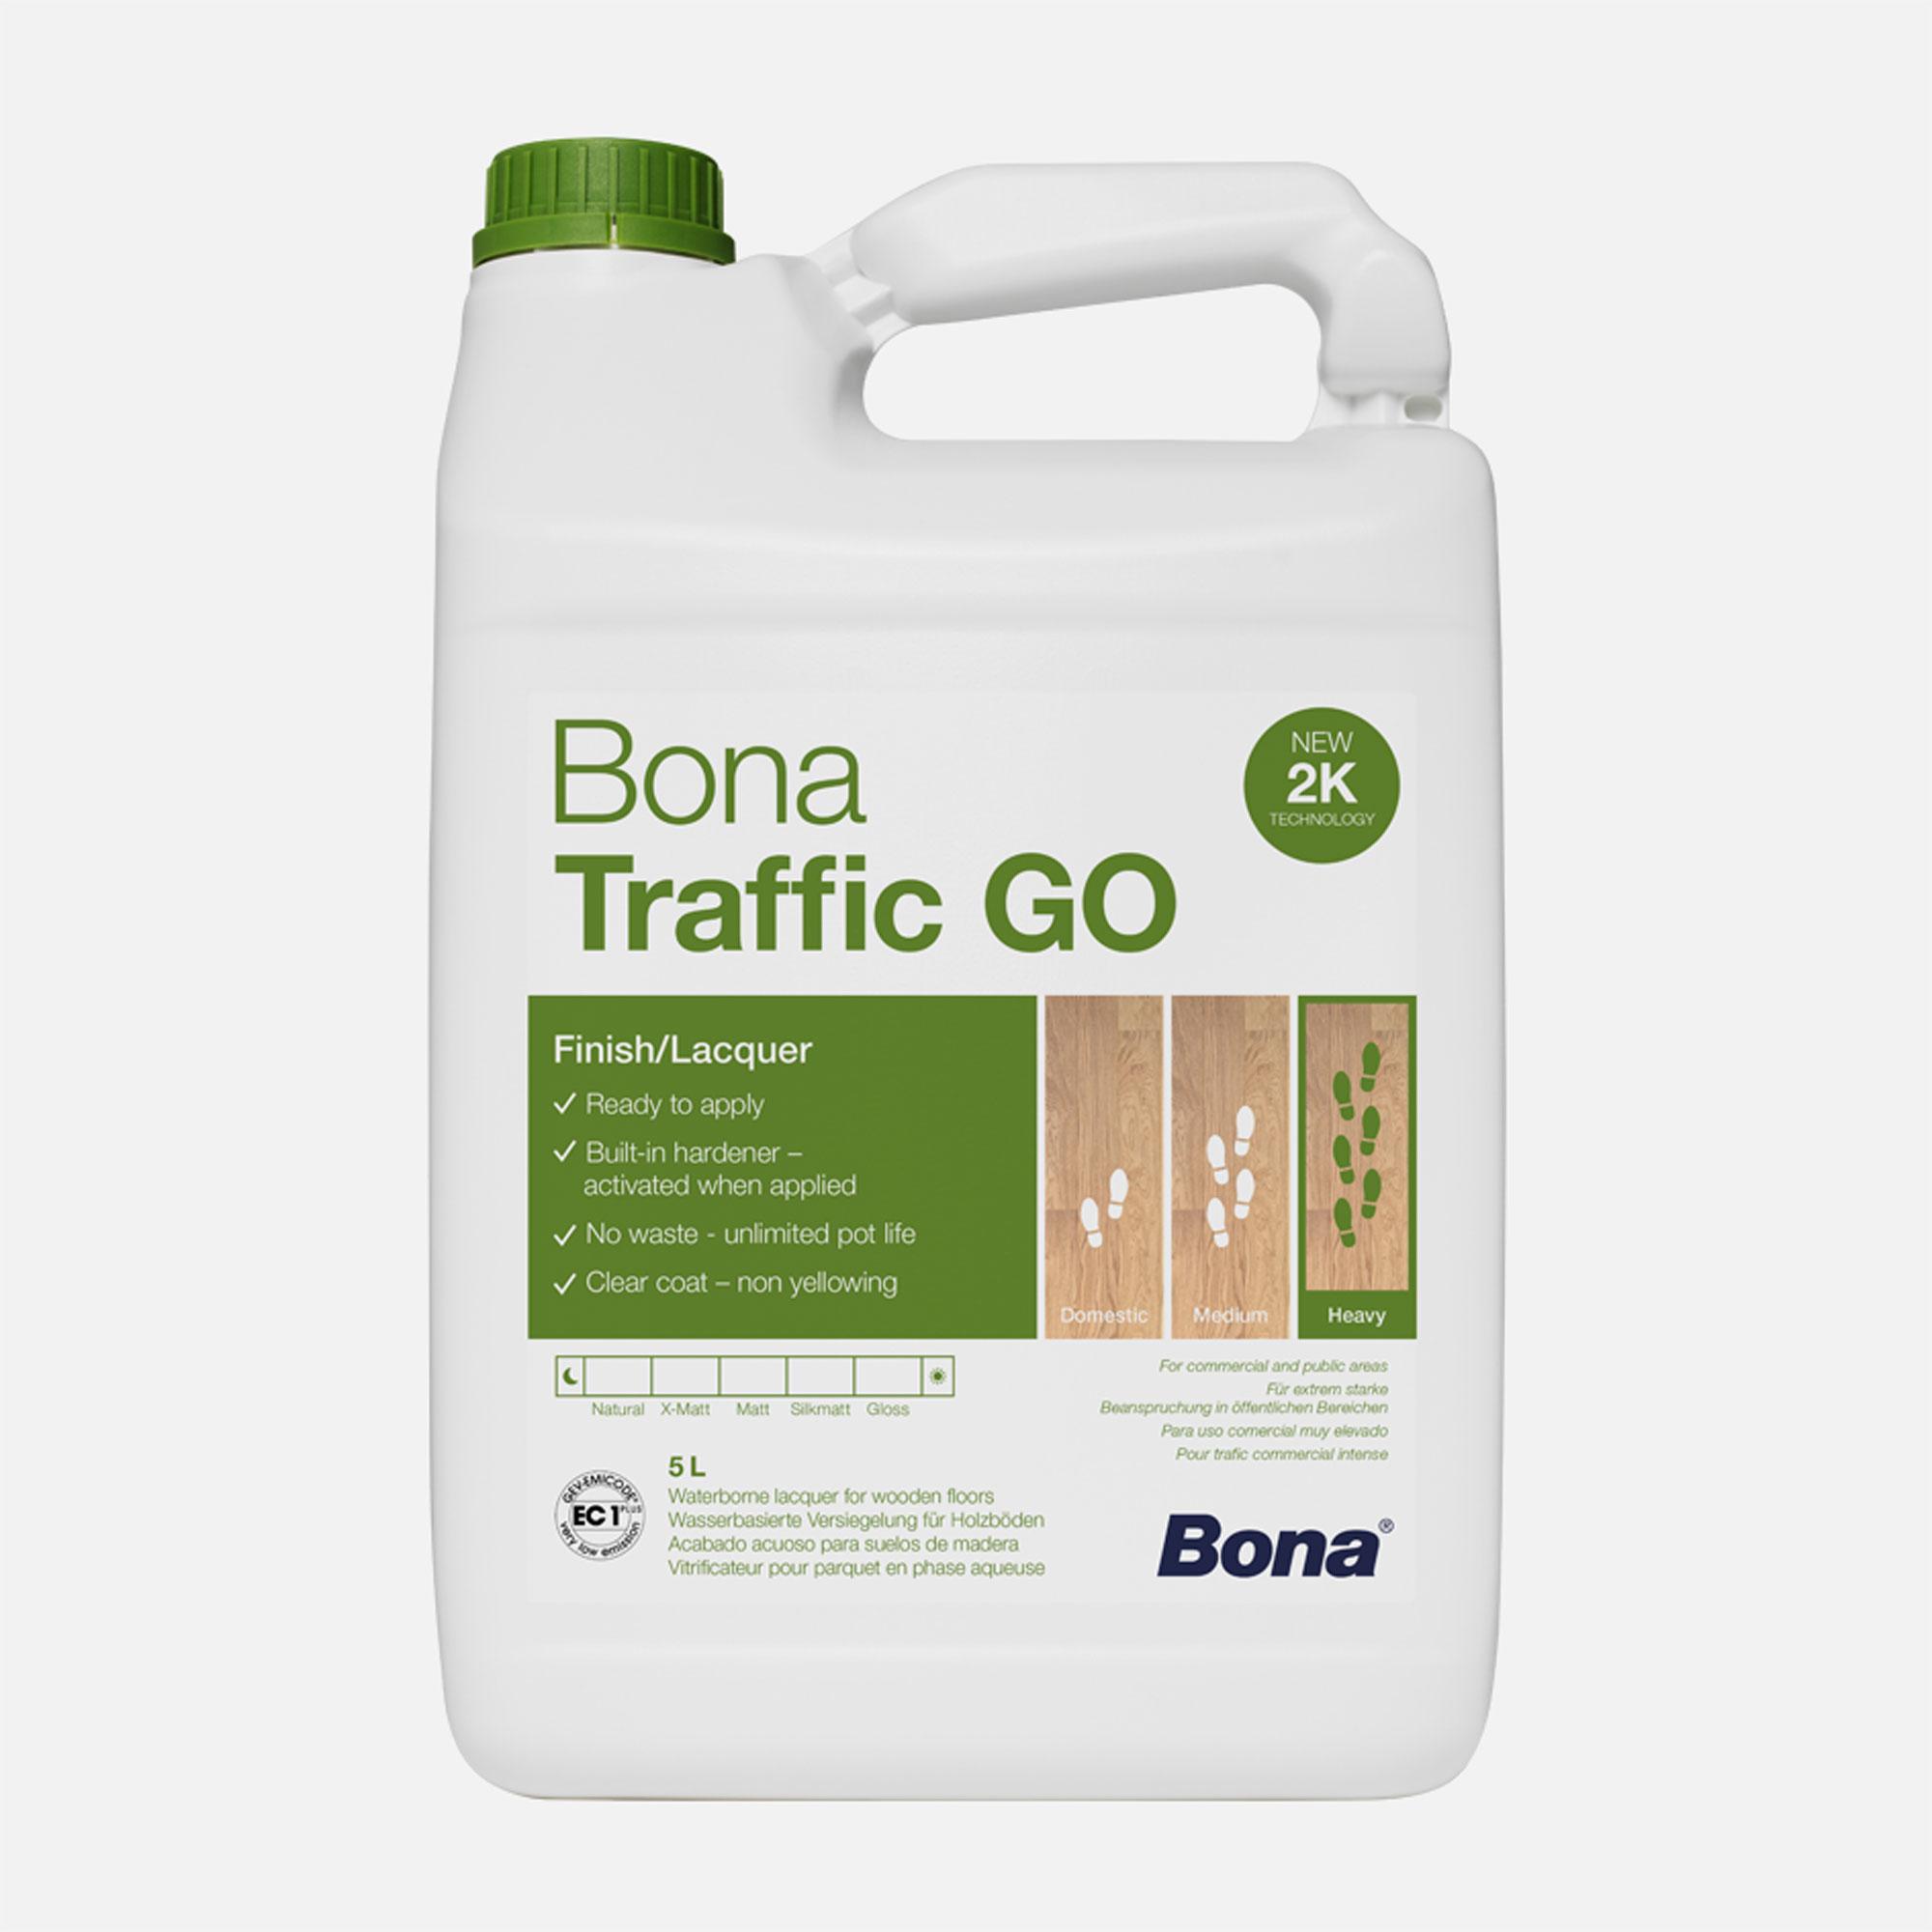 Bona Traffic GO halbmatt wasserbasierte selbst-vernetzende Versiegelung